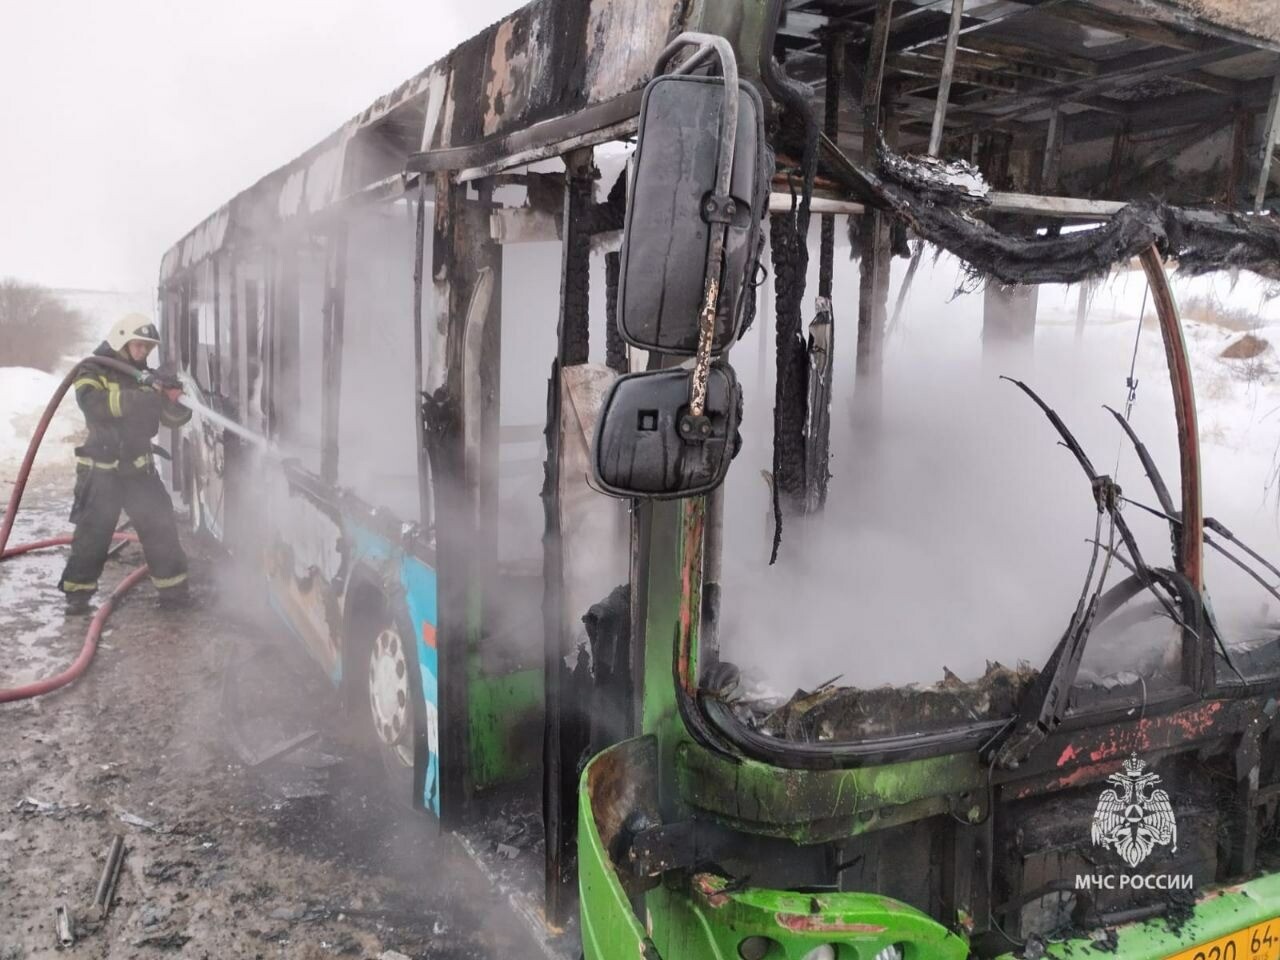 Автобус полностью сгорел в Саратове, пассажиры успели эвакуироваться